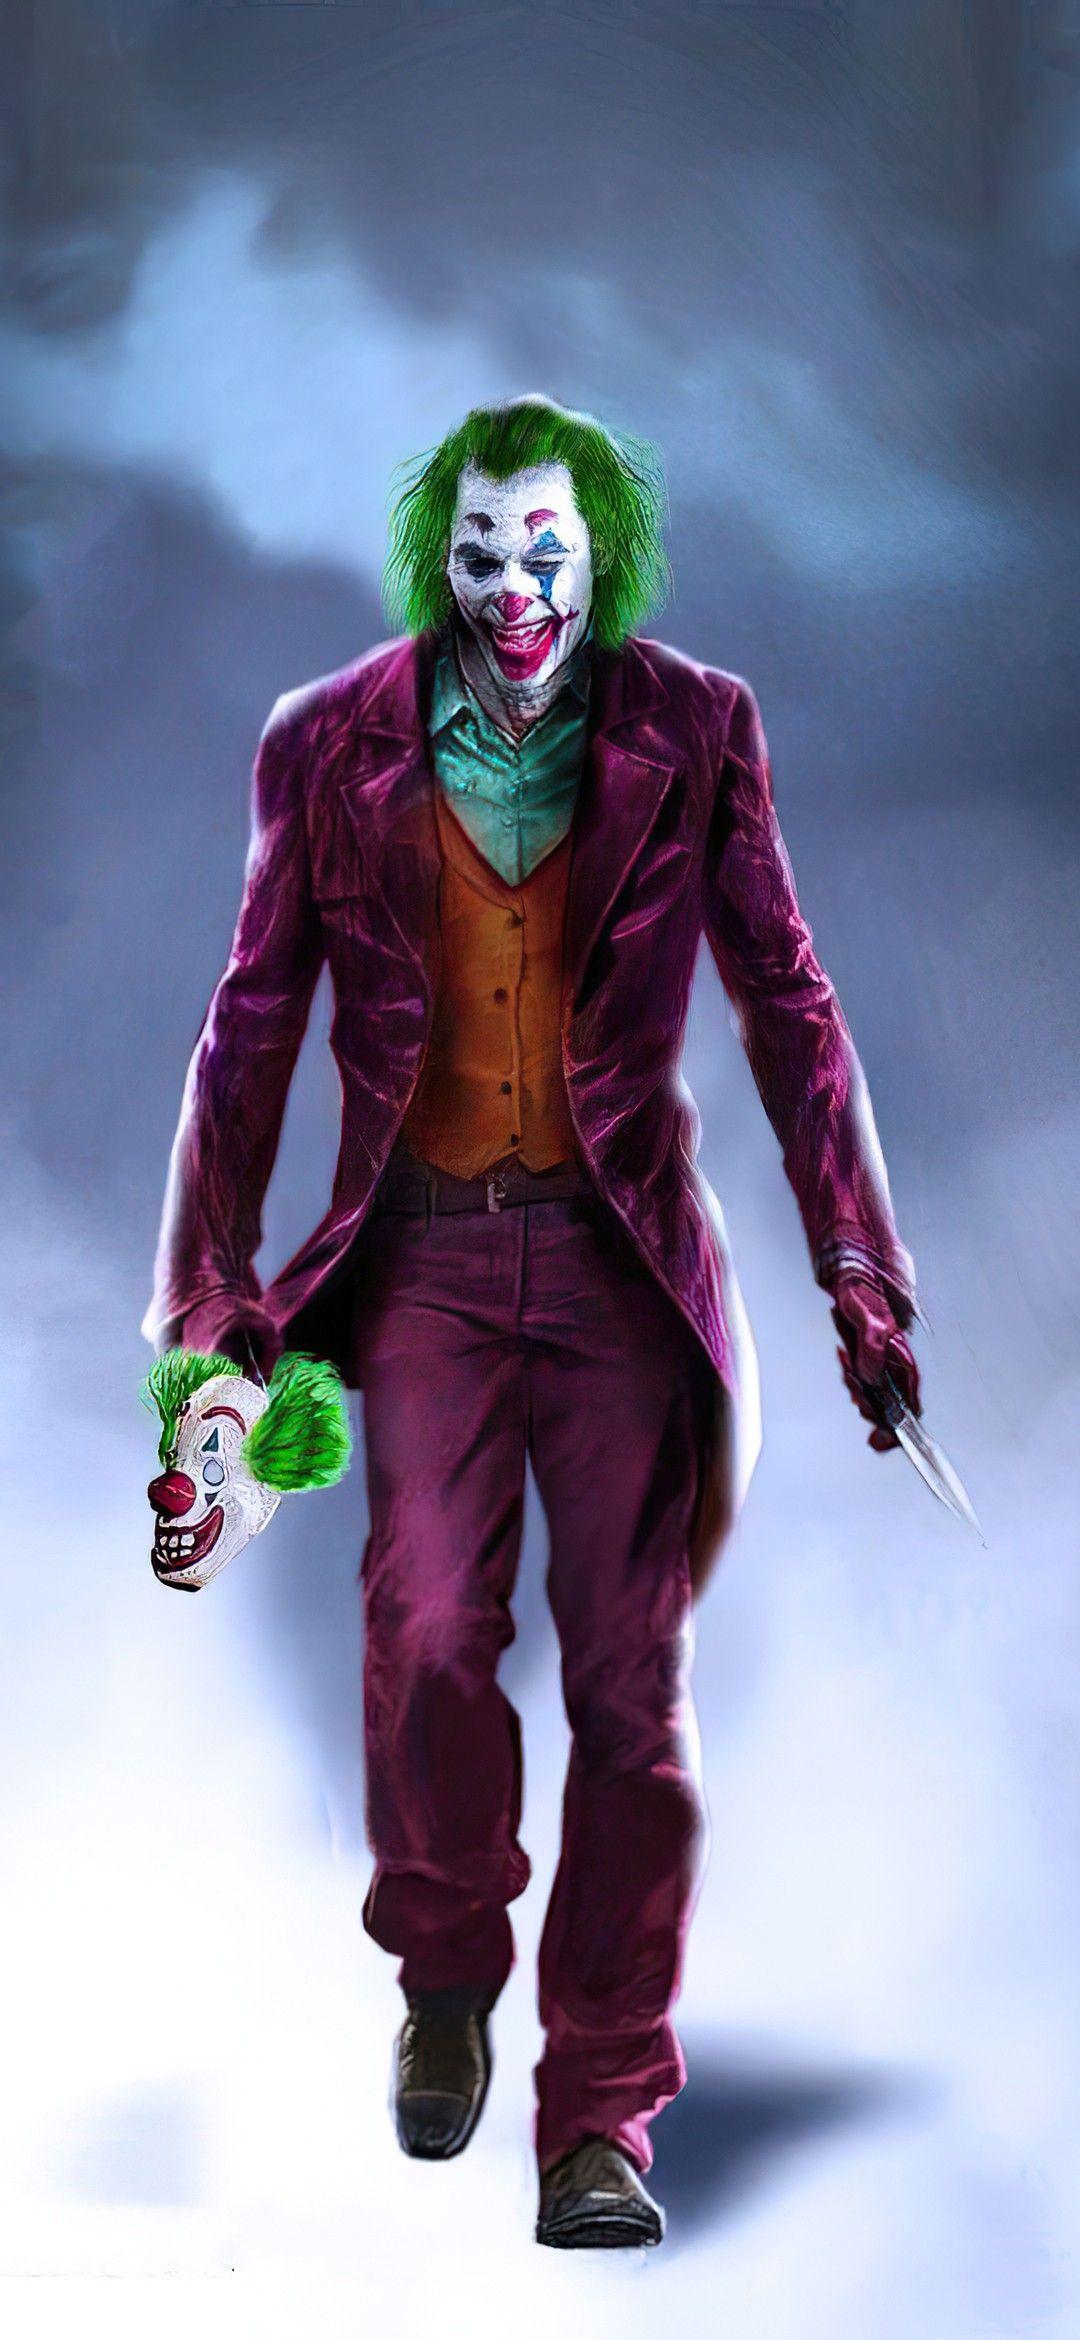 Creative Joker Wallpapers - Top Free Creative Joker Backgrounds ...